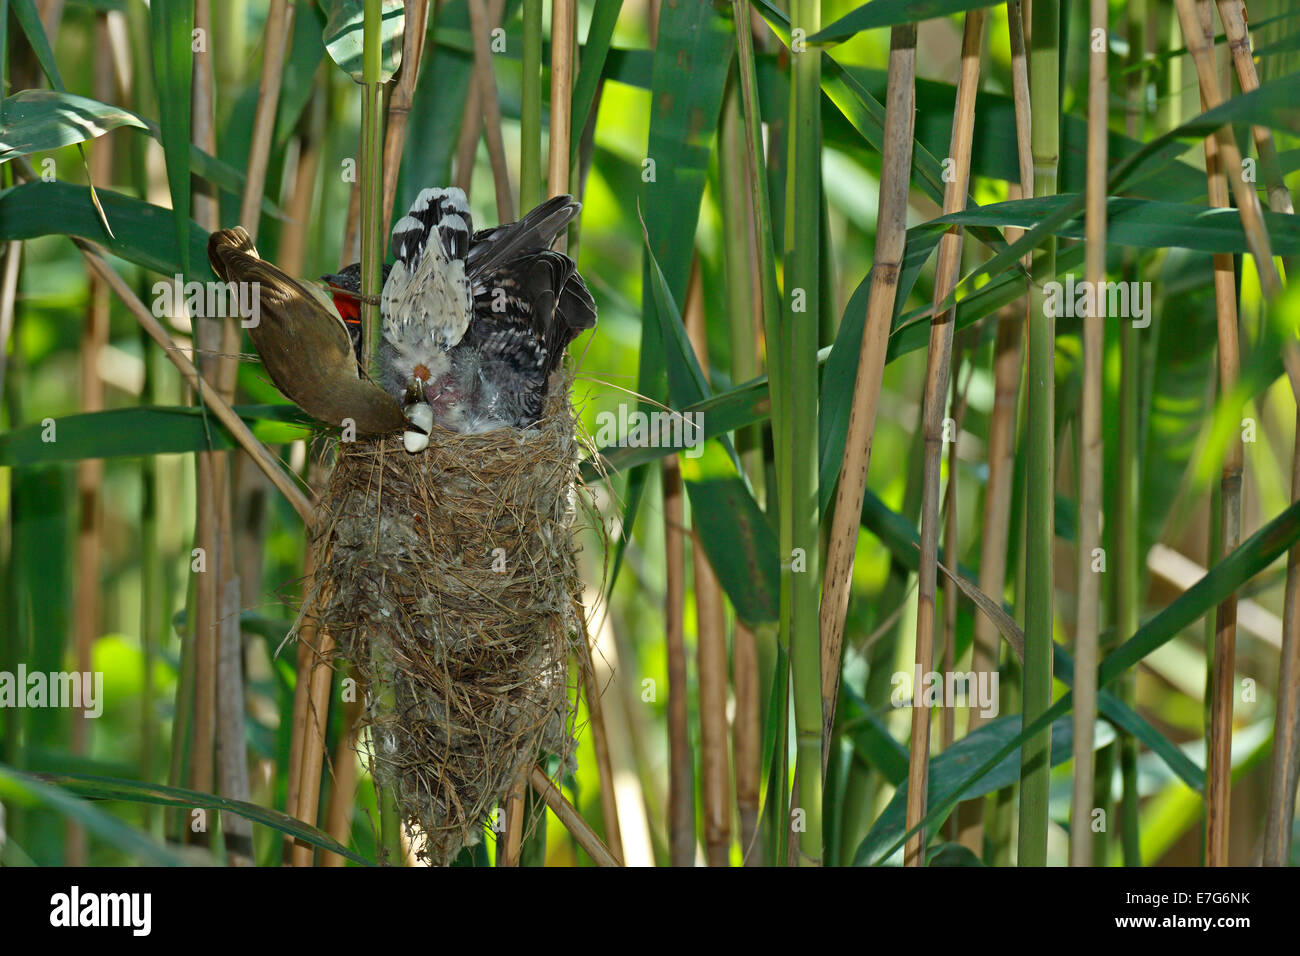 Un Reed Warbler (Acrocephalus scirpaceus) prend l'excrément un coucou (Cuculus canorus), jeune oiseau, oiseau de l'hôte pour le coucou Banque D'Images